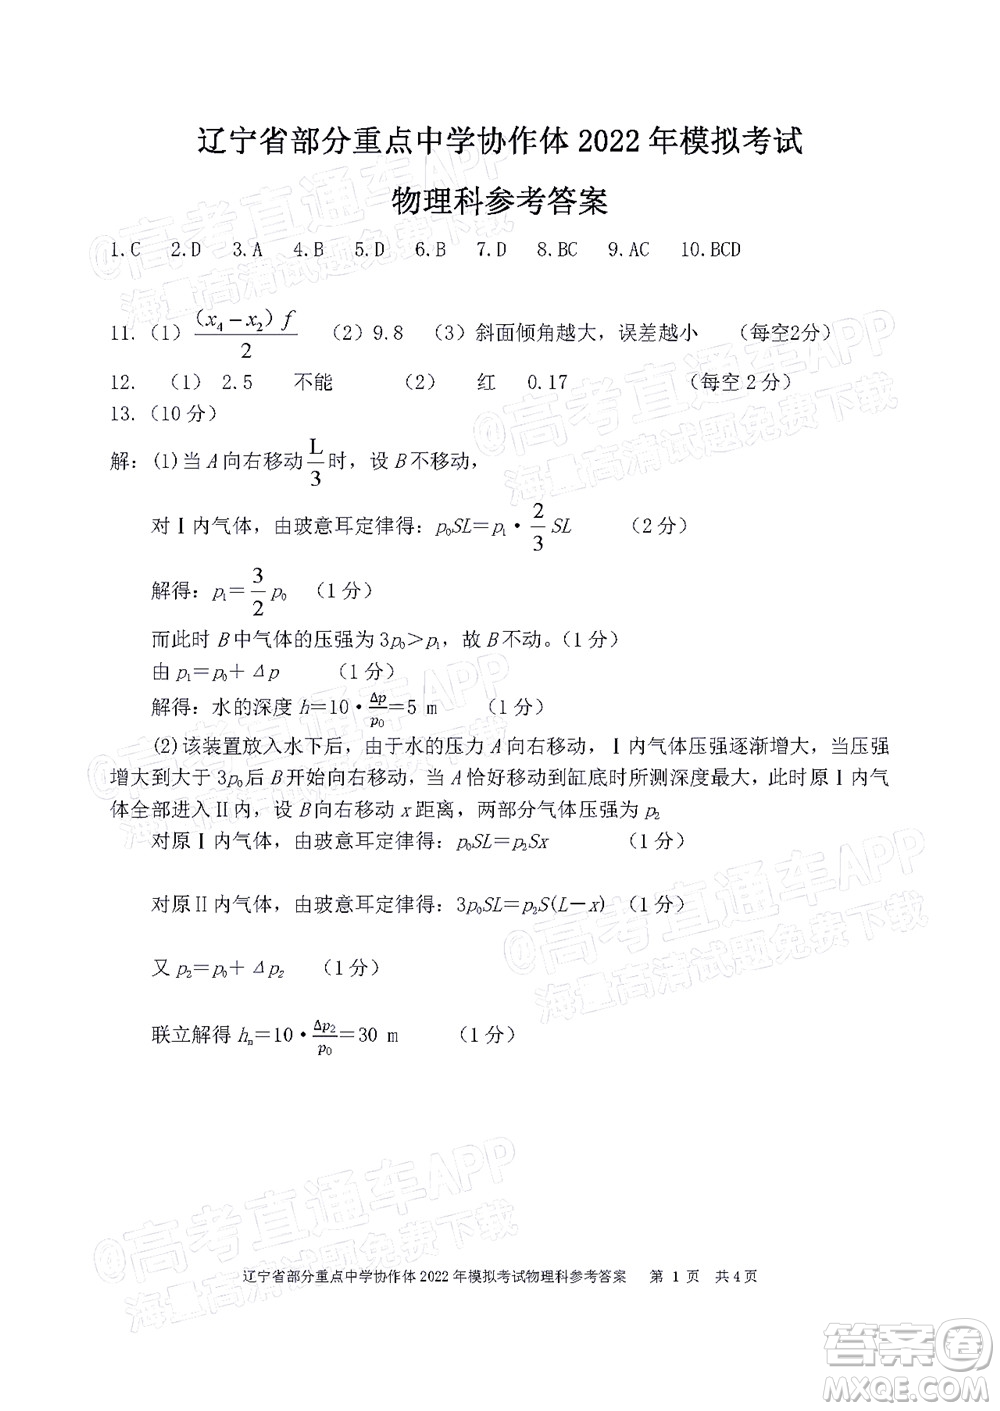 辽宁省部分重点中学协作体2022年模拟考试高三物理试题及答案